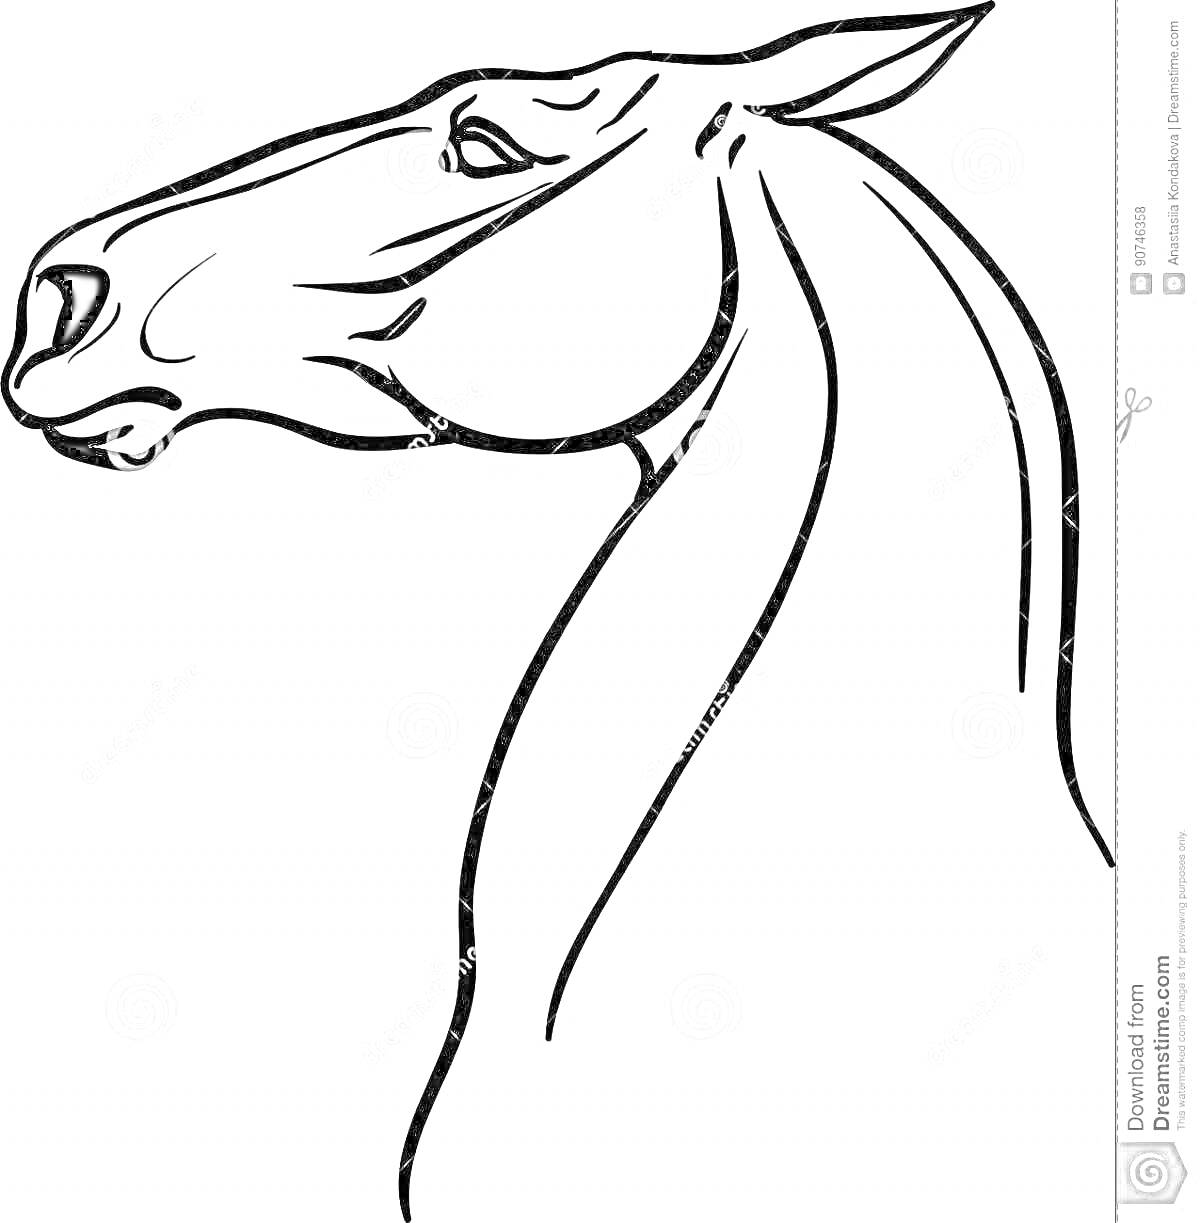 Раскраска контурная иллюстрация головы лошади с шеей